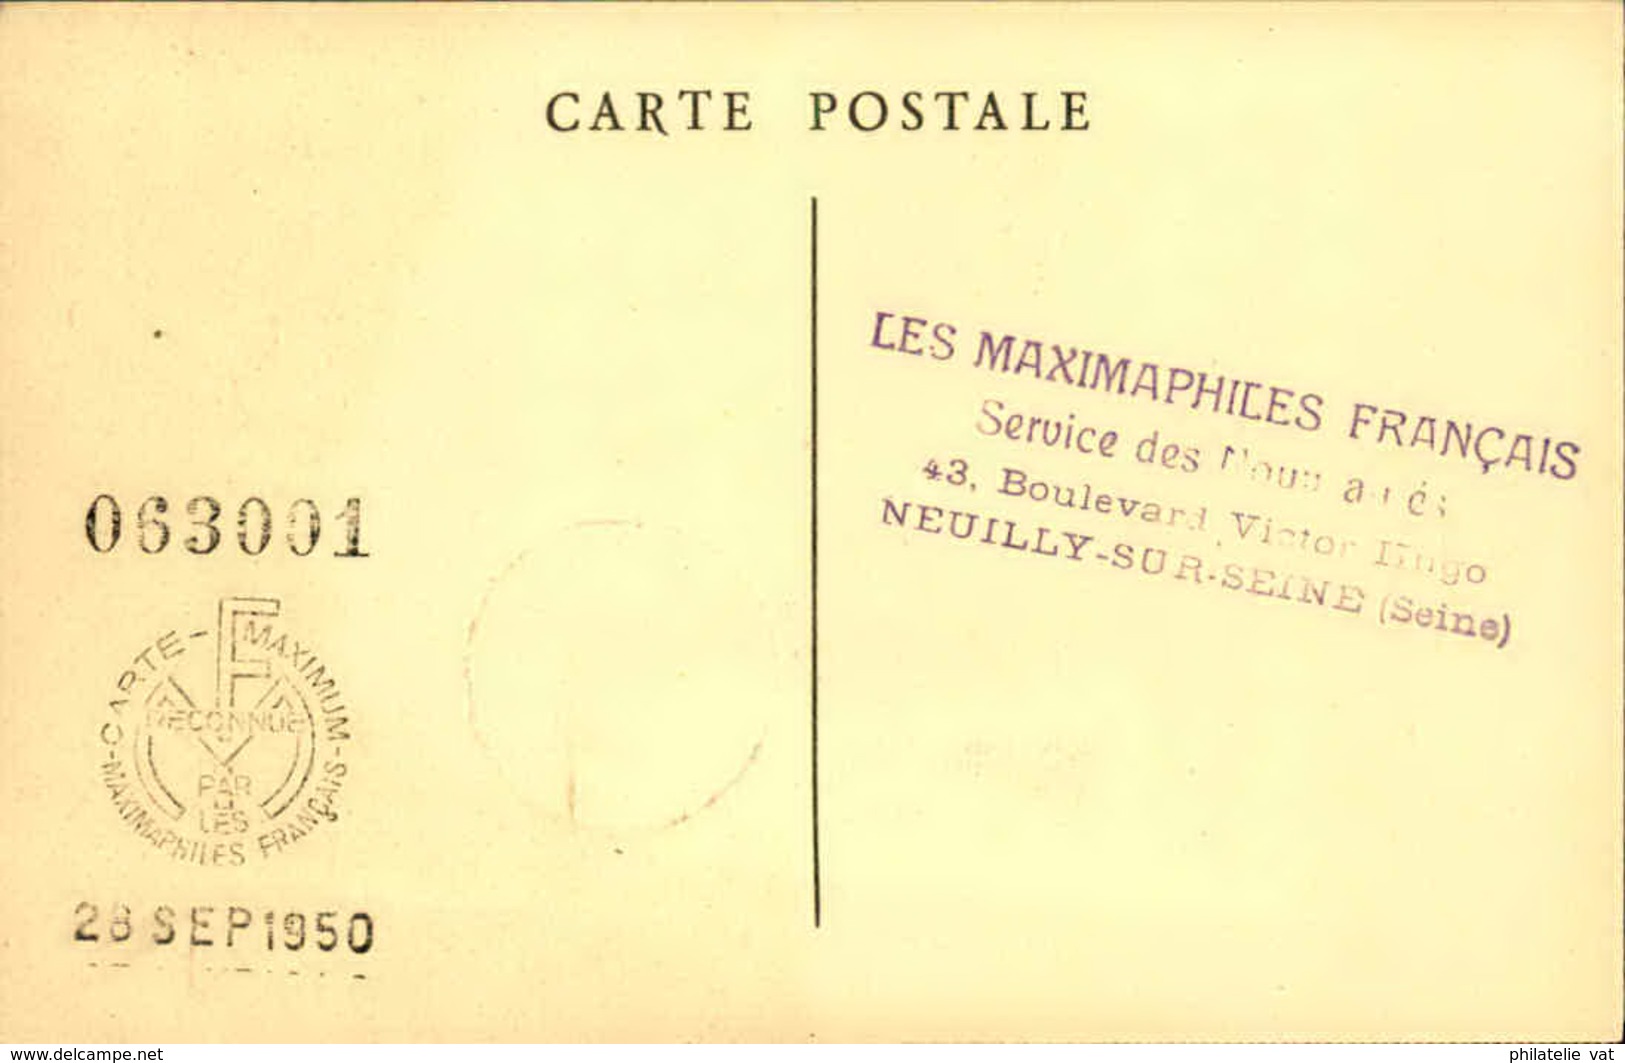 FRANCE - Cartes maximum "Les Grands Hommes de la Révolution Française (série 6 cartes) - P20951 à P20956